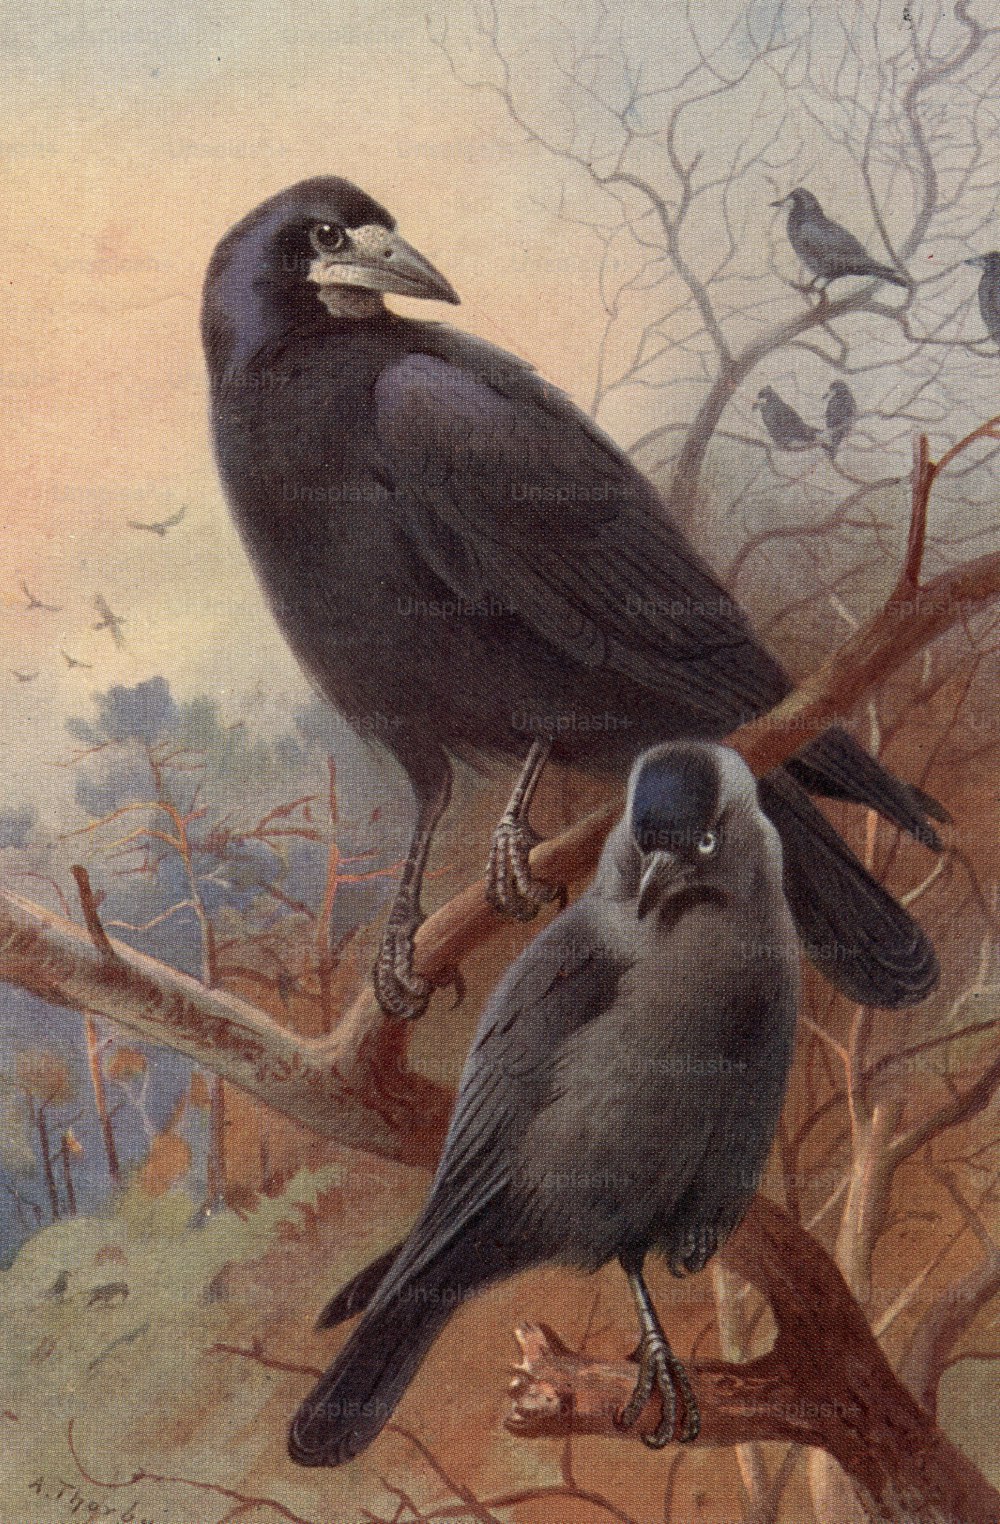 um 1800: Ein Turm (oben) und eine Dohle (unten), zwei Vögel der Krähenfamilie.  (Foto von Hulton Archive / Getty Images)